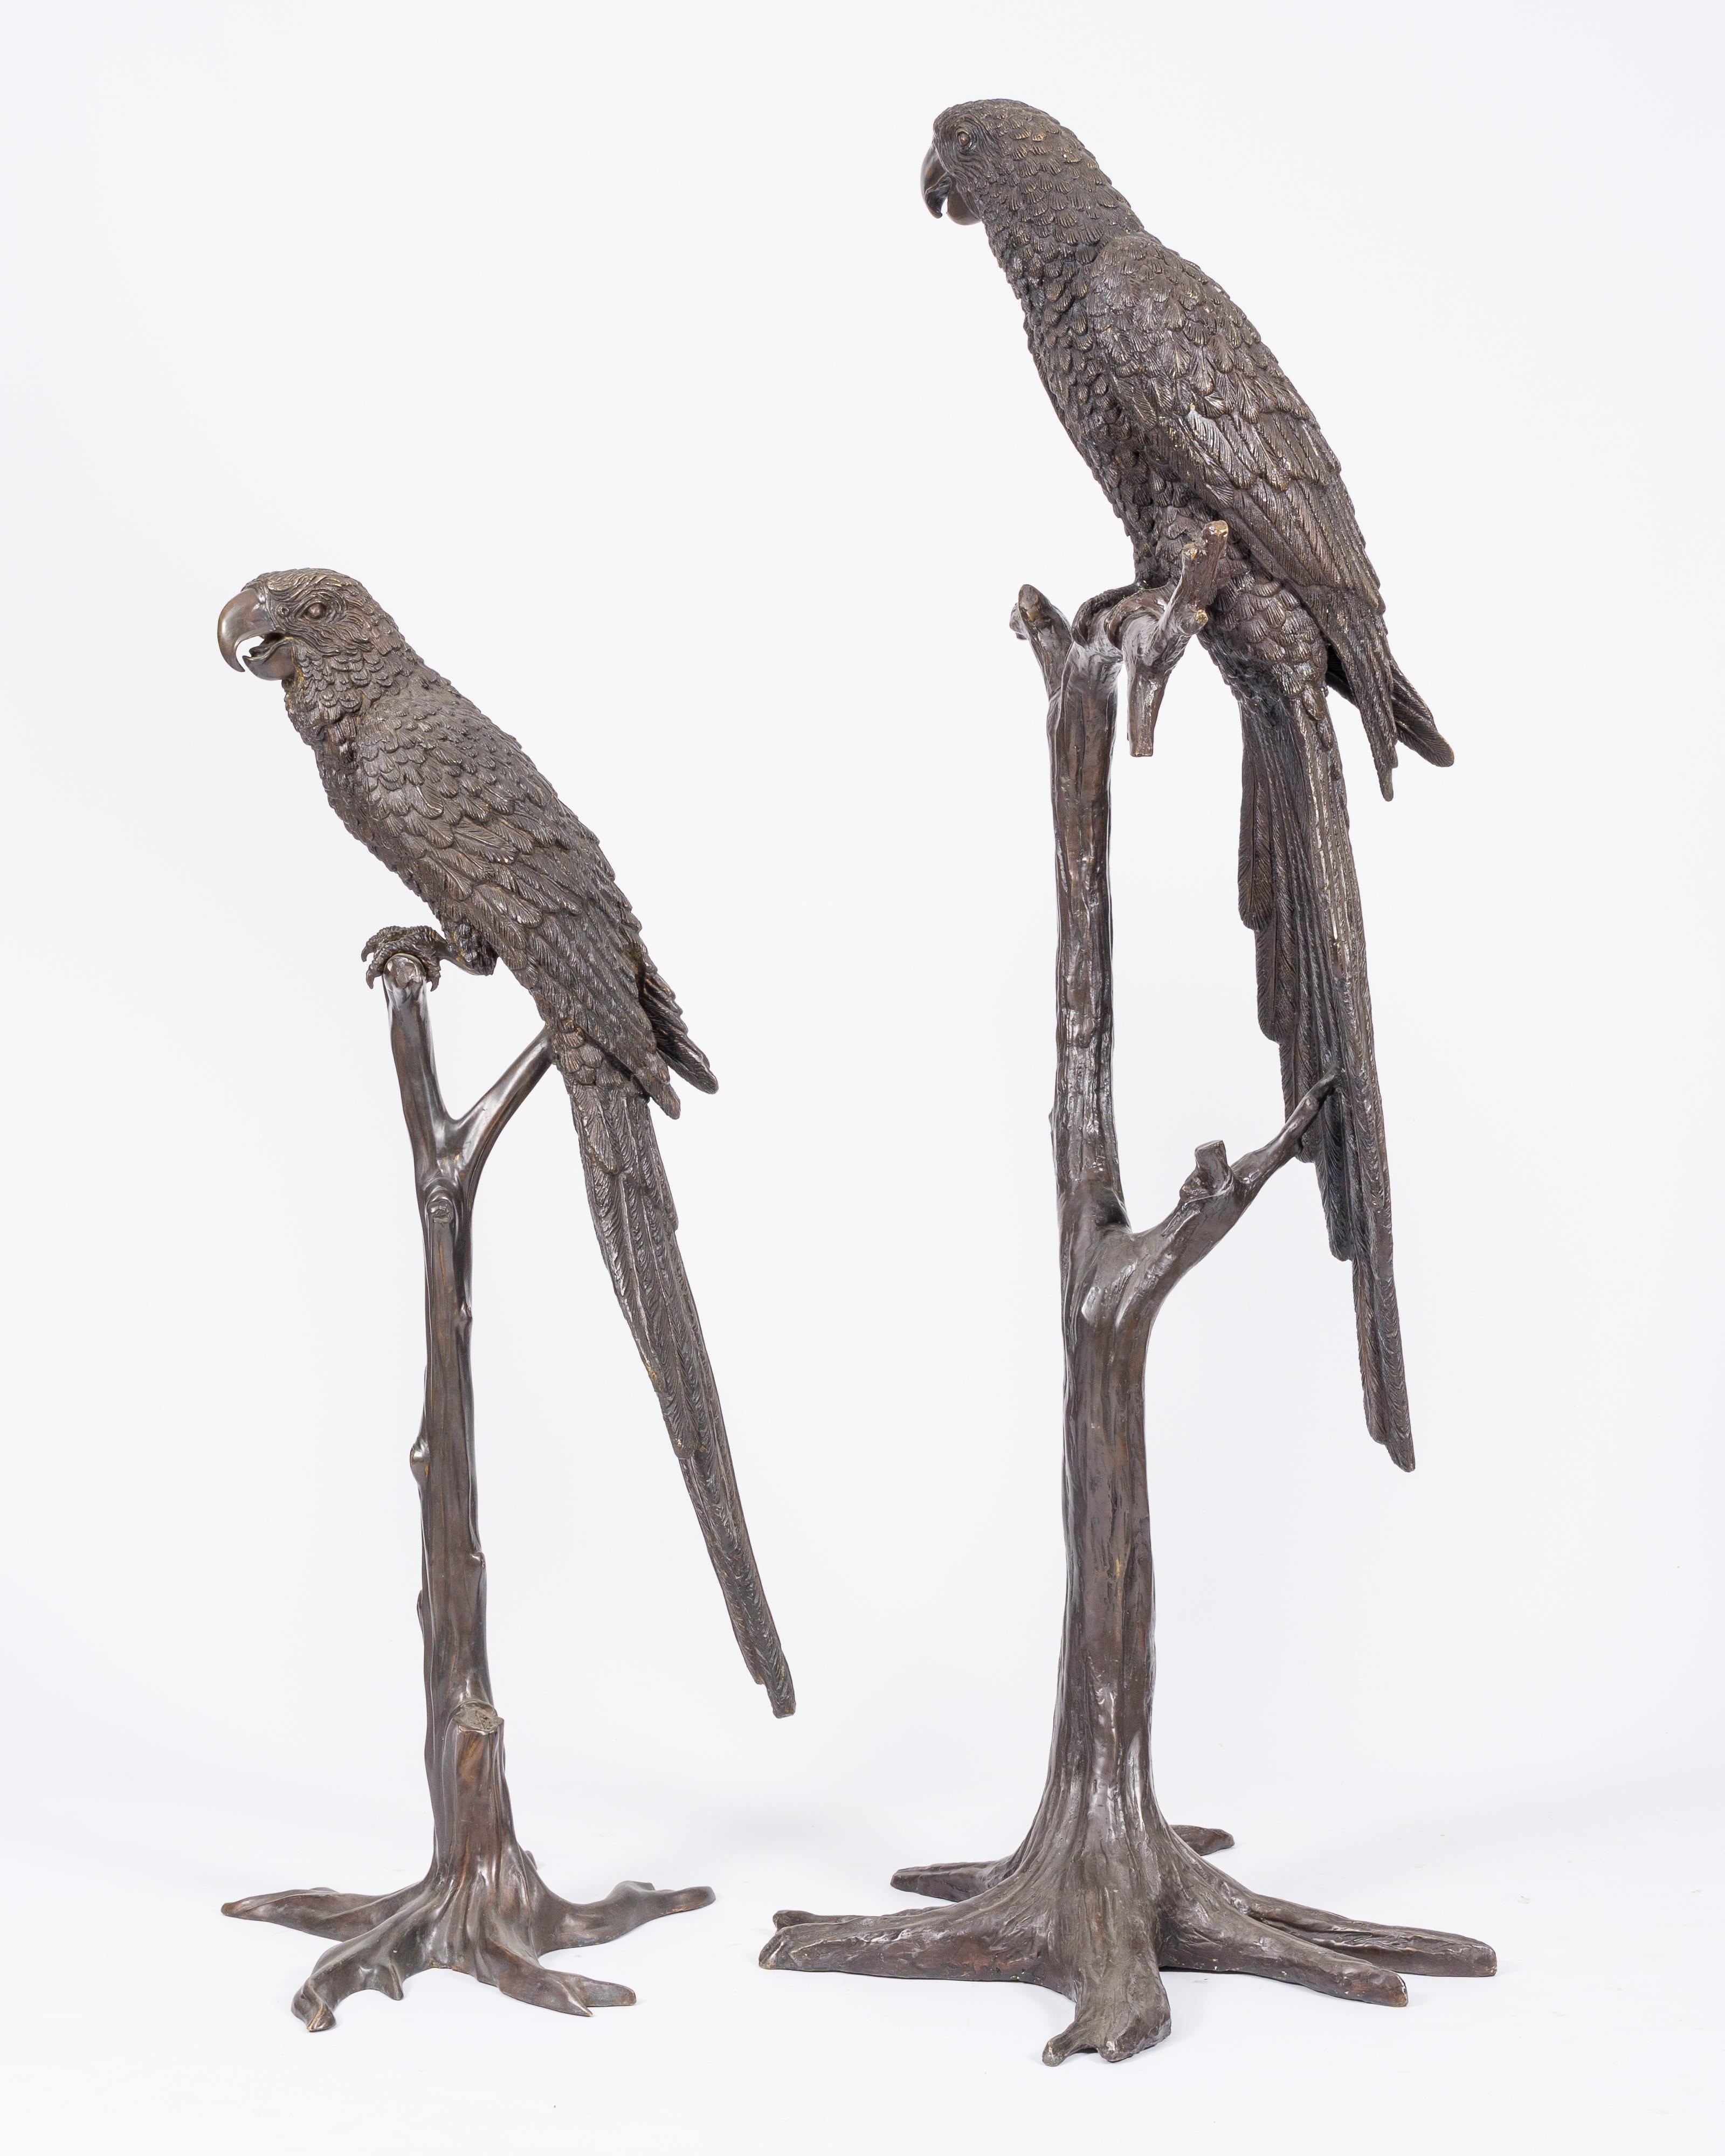 Paire d'impressionnants modèles en bronze patiné brun représentant un ara sur une branche, 20e siècle.

Description :
H 173 - 131 cm